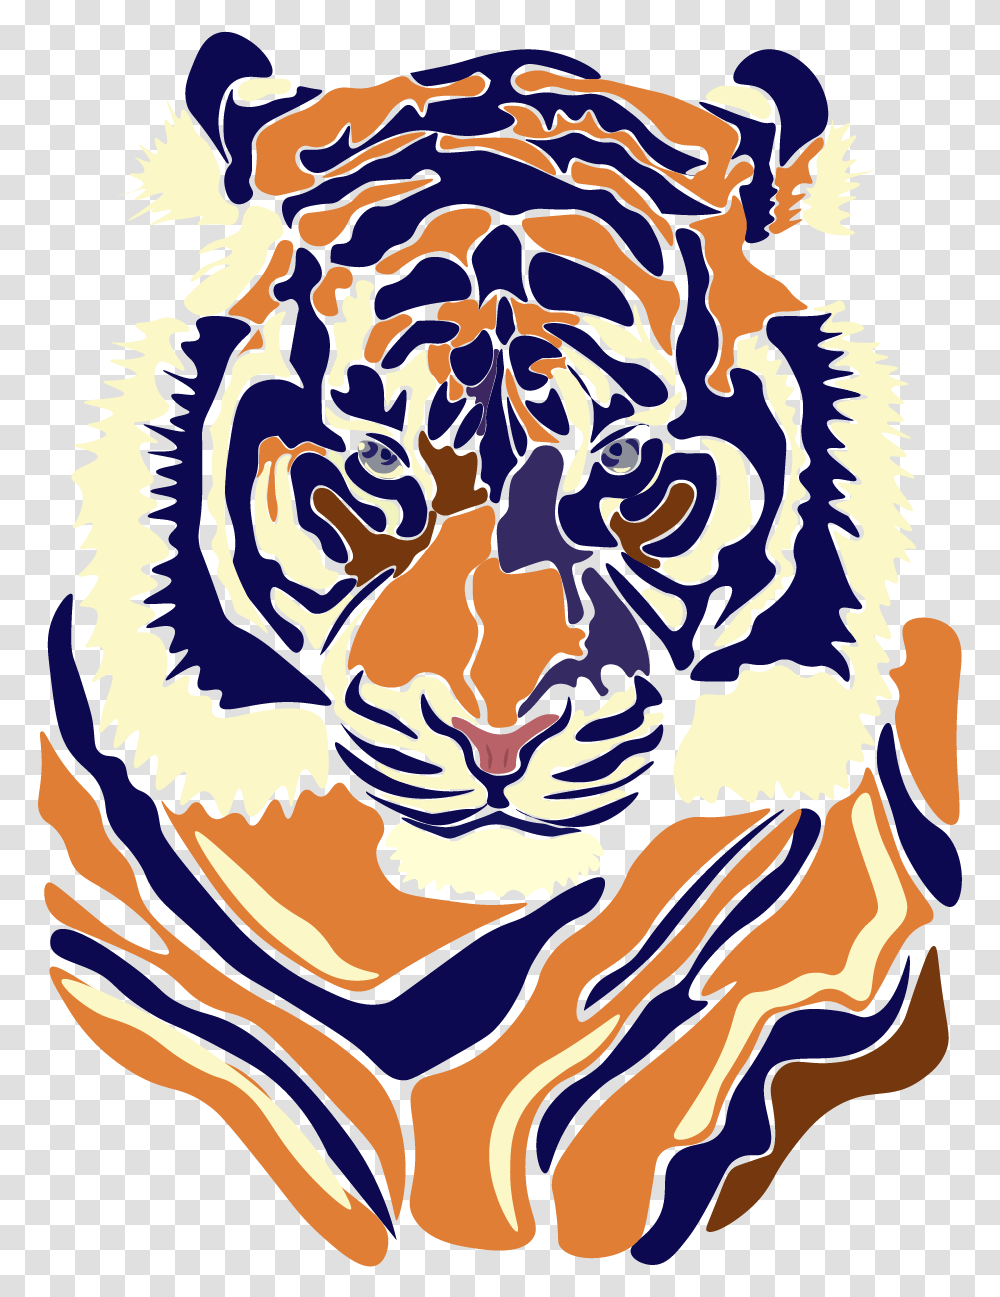 Siberian Tiger Download Siberian Tiger, Dragon, Emblem Transparent Png